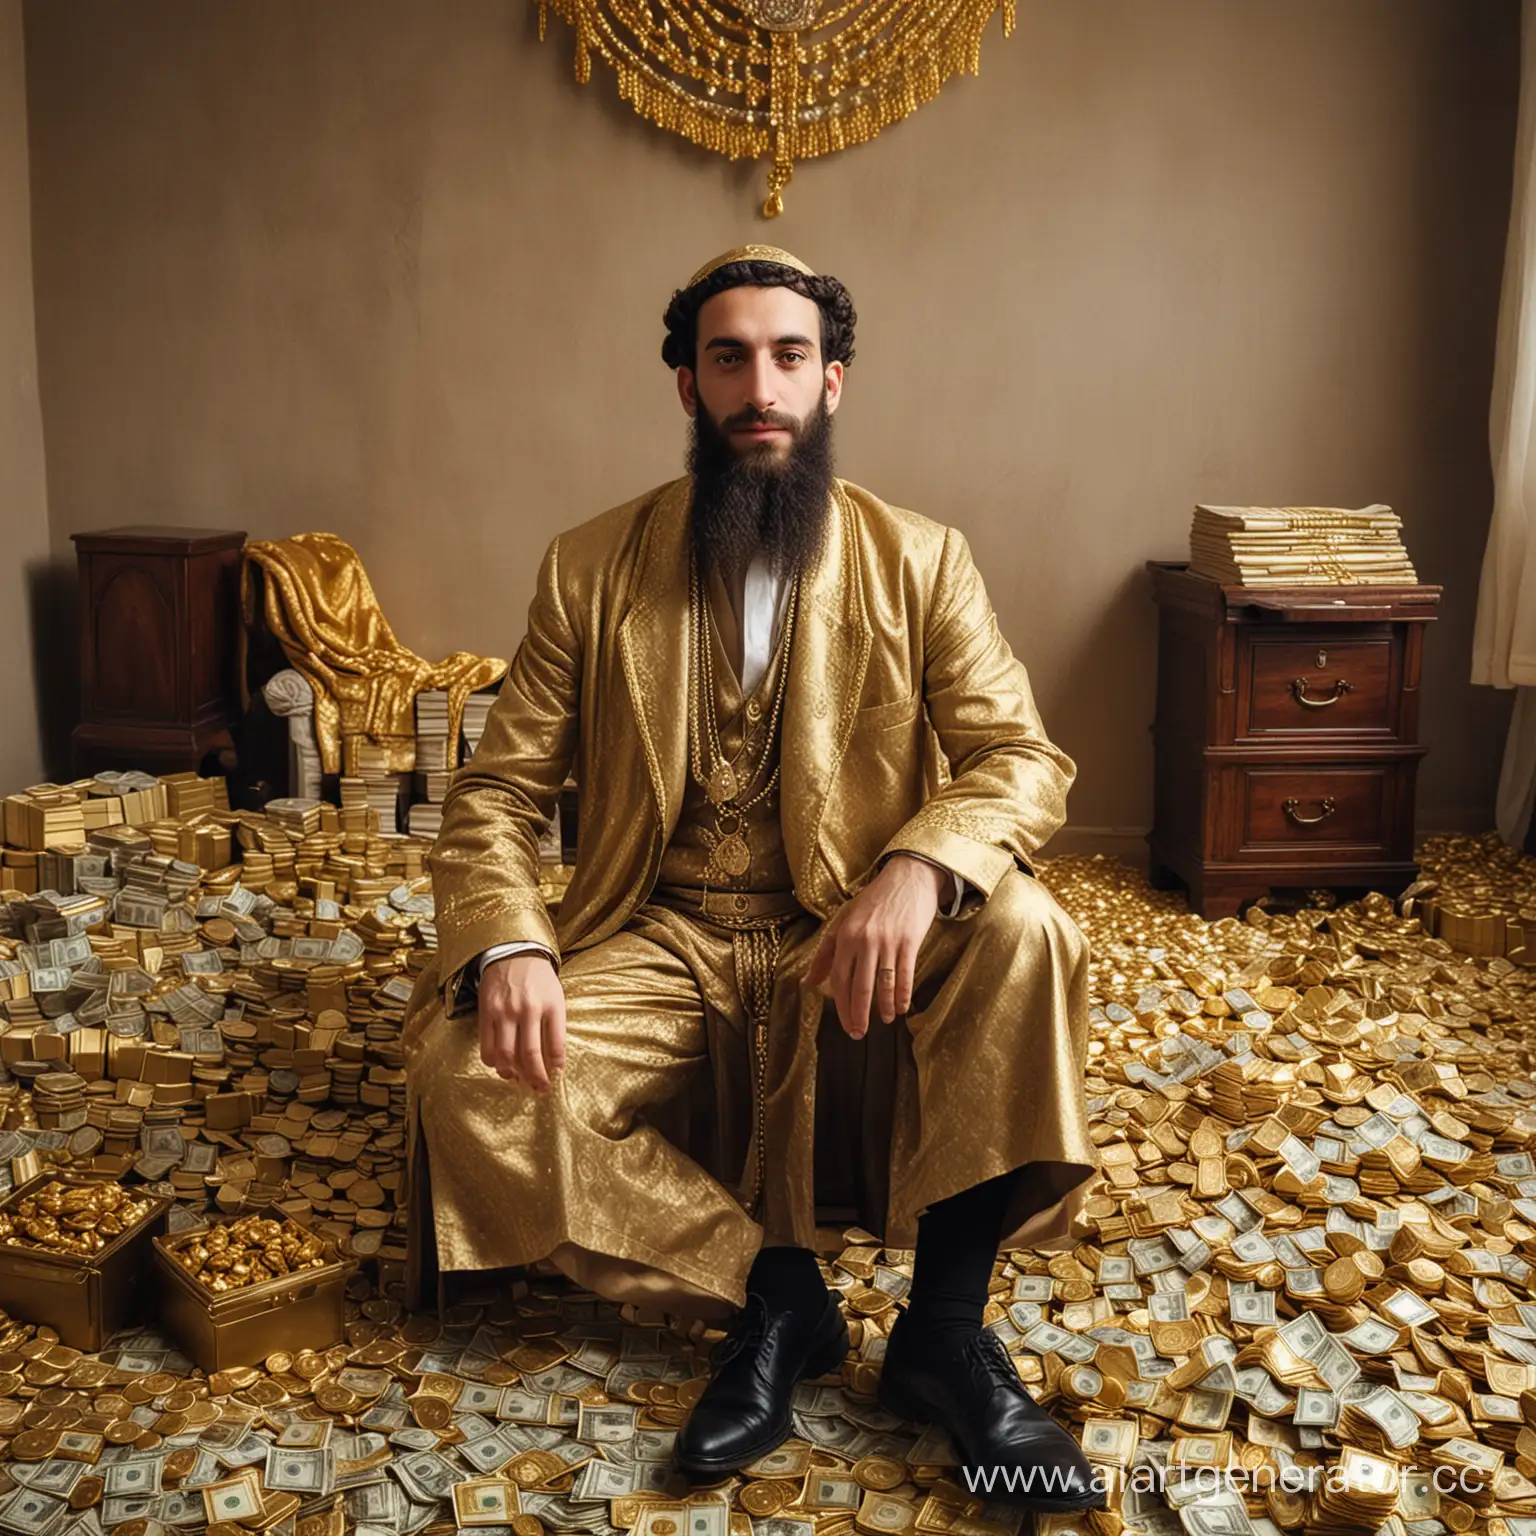 Еврей в богатой одежде который живёт очень богато и сидит в комнате где много золота и денег